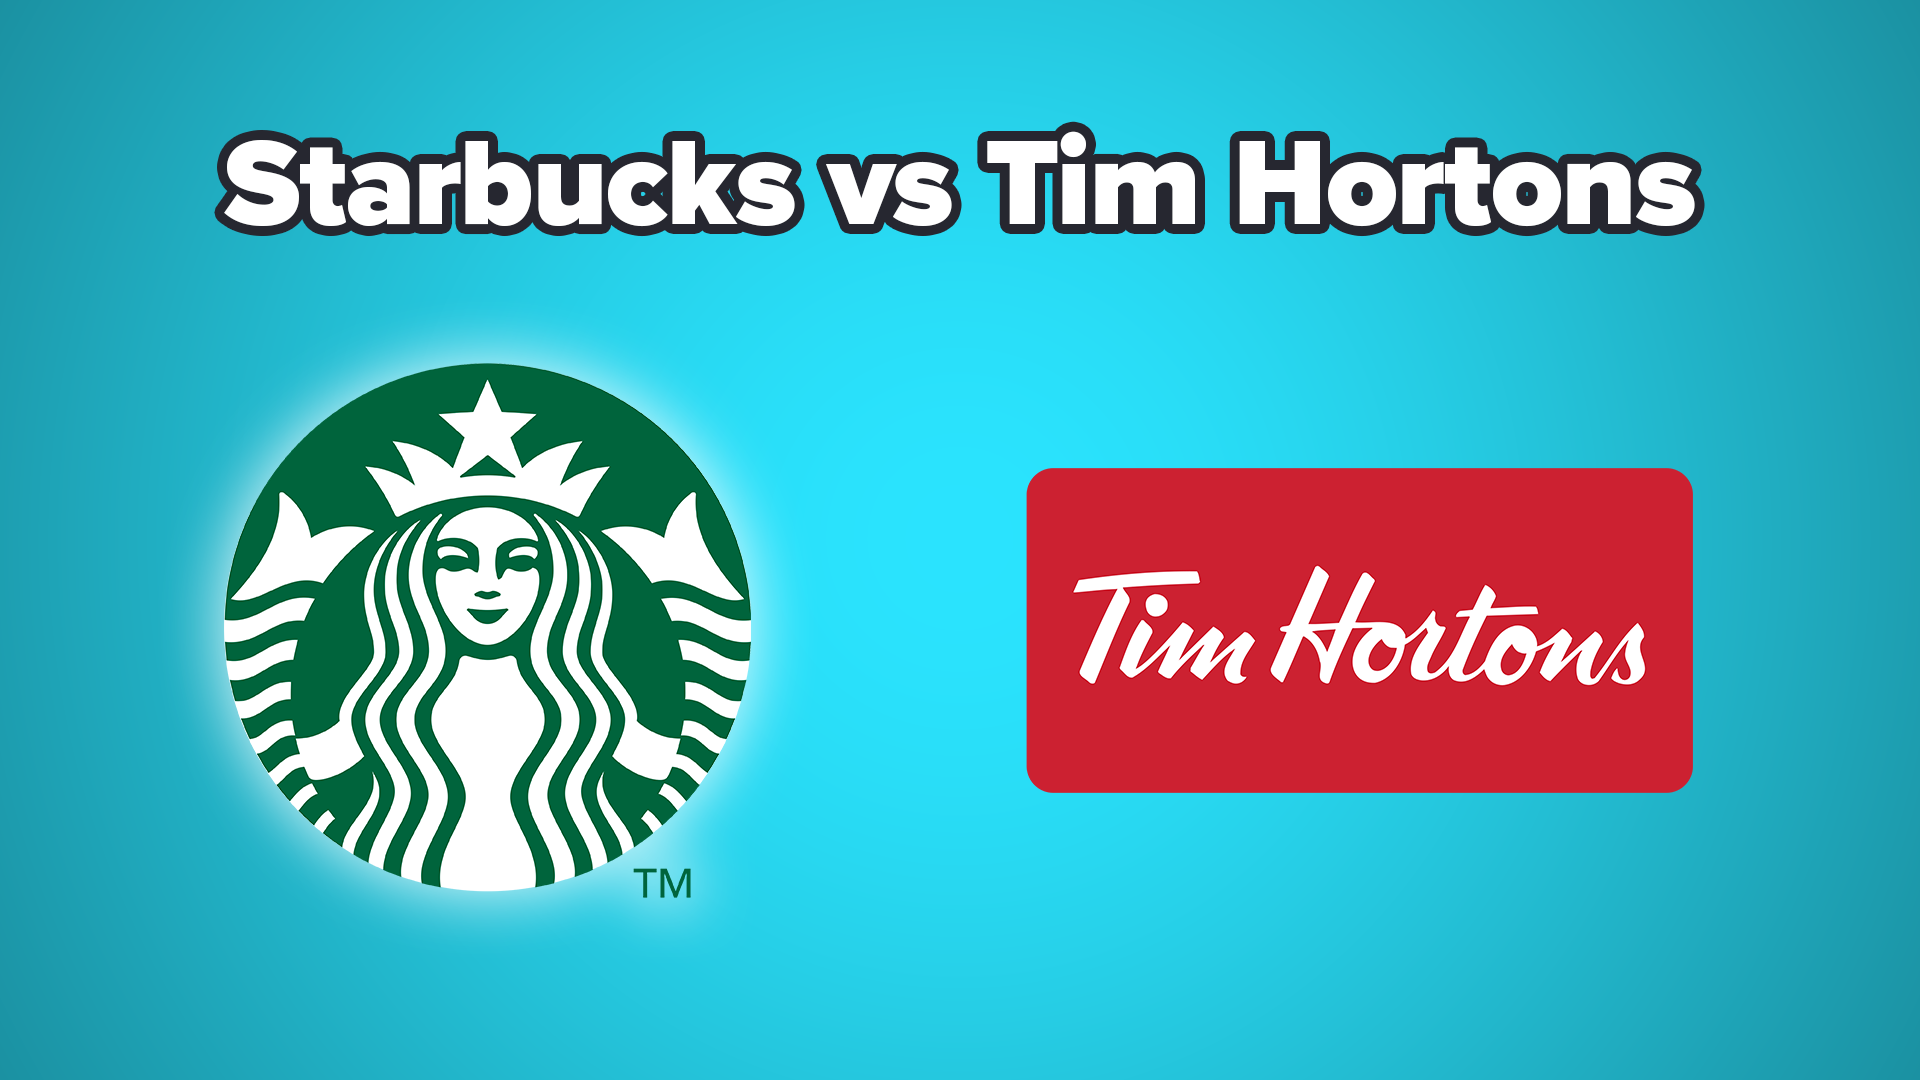 Tims Hortons vs Starbucks: Bạn muốn biết sự khác biệt giữa 2 thương hiệu đồ uống nổi tiếng? Tims Hortons vs Starbucks là một cuộc chiến bất tận được nhiều người quan tâm. Hãy cùng chúng tôi khám phá sự khác nhau giữa đồ uống, không gian và cảm nhận khách hàng giữa hai thương hiệu này. Bạn sẽ có một trải nghiệm thú vị và bổ ích!